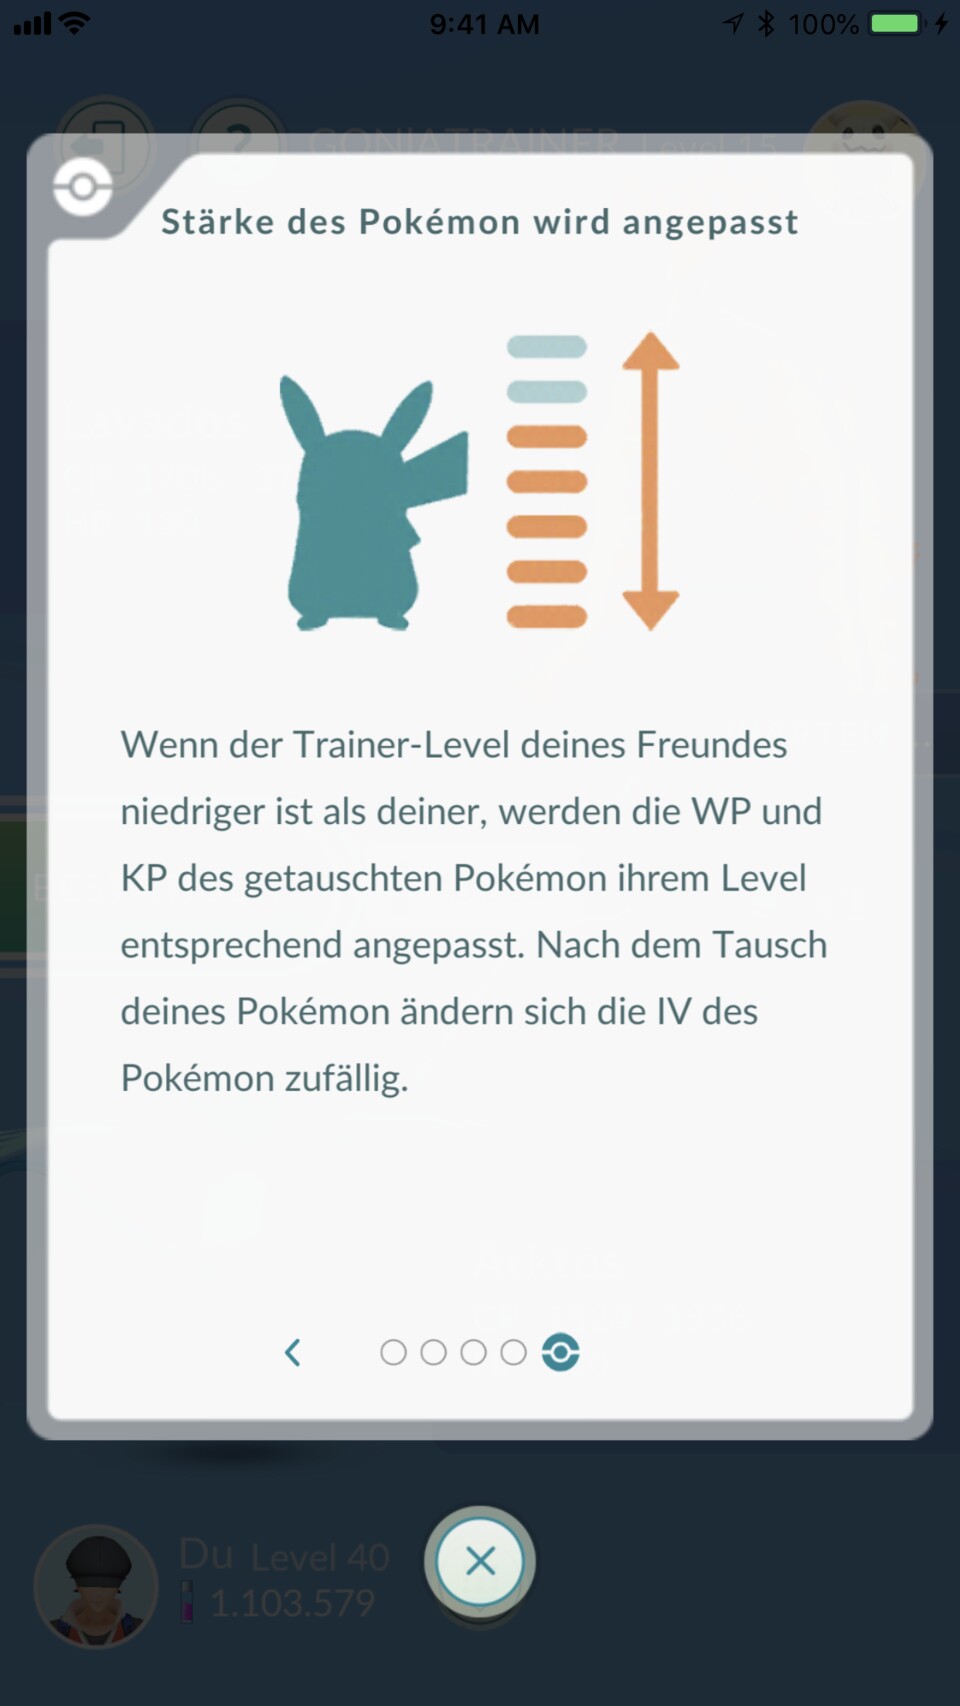 Getauschte Pokémon ändern ihre vorherigen Werte.